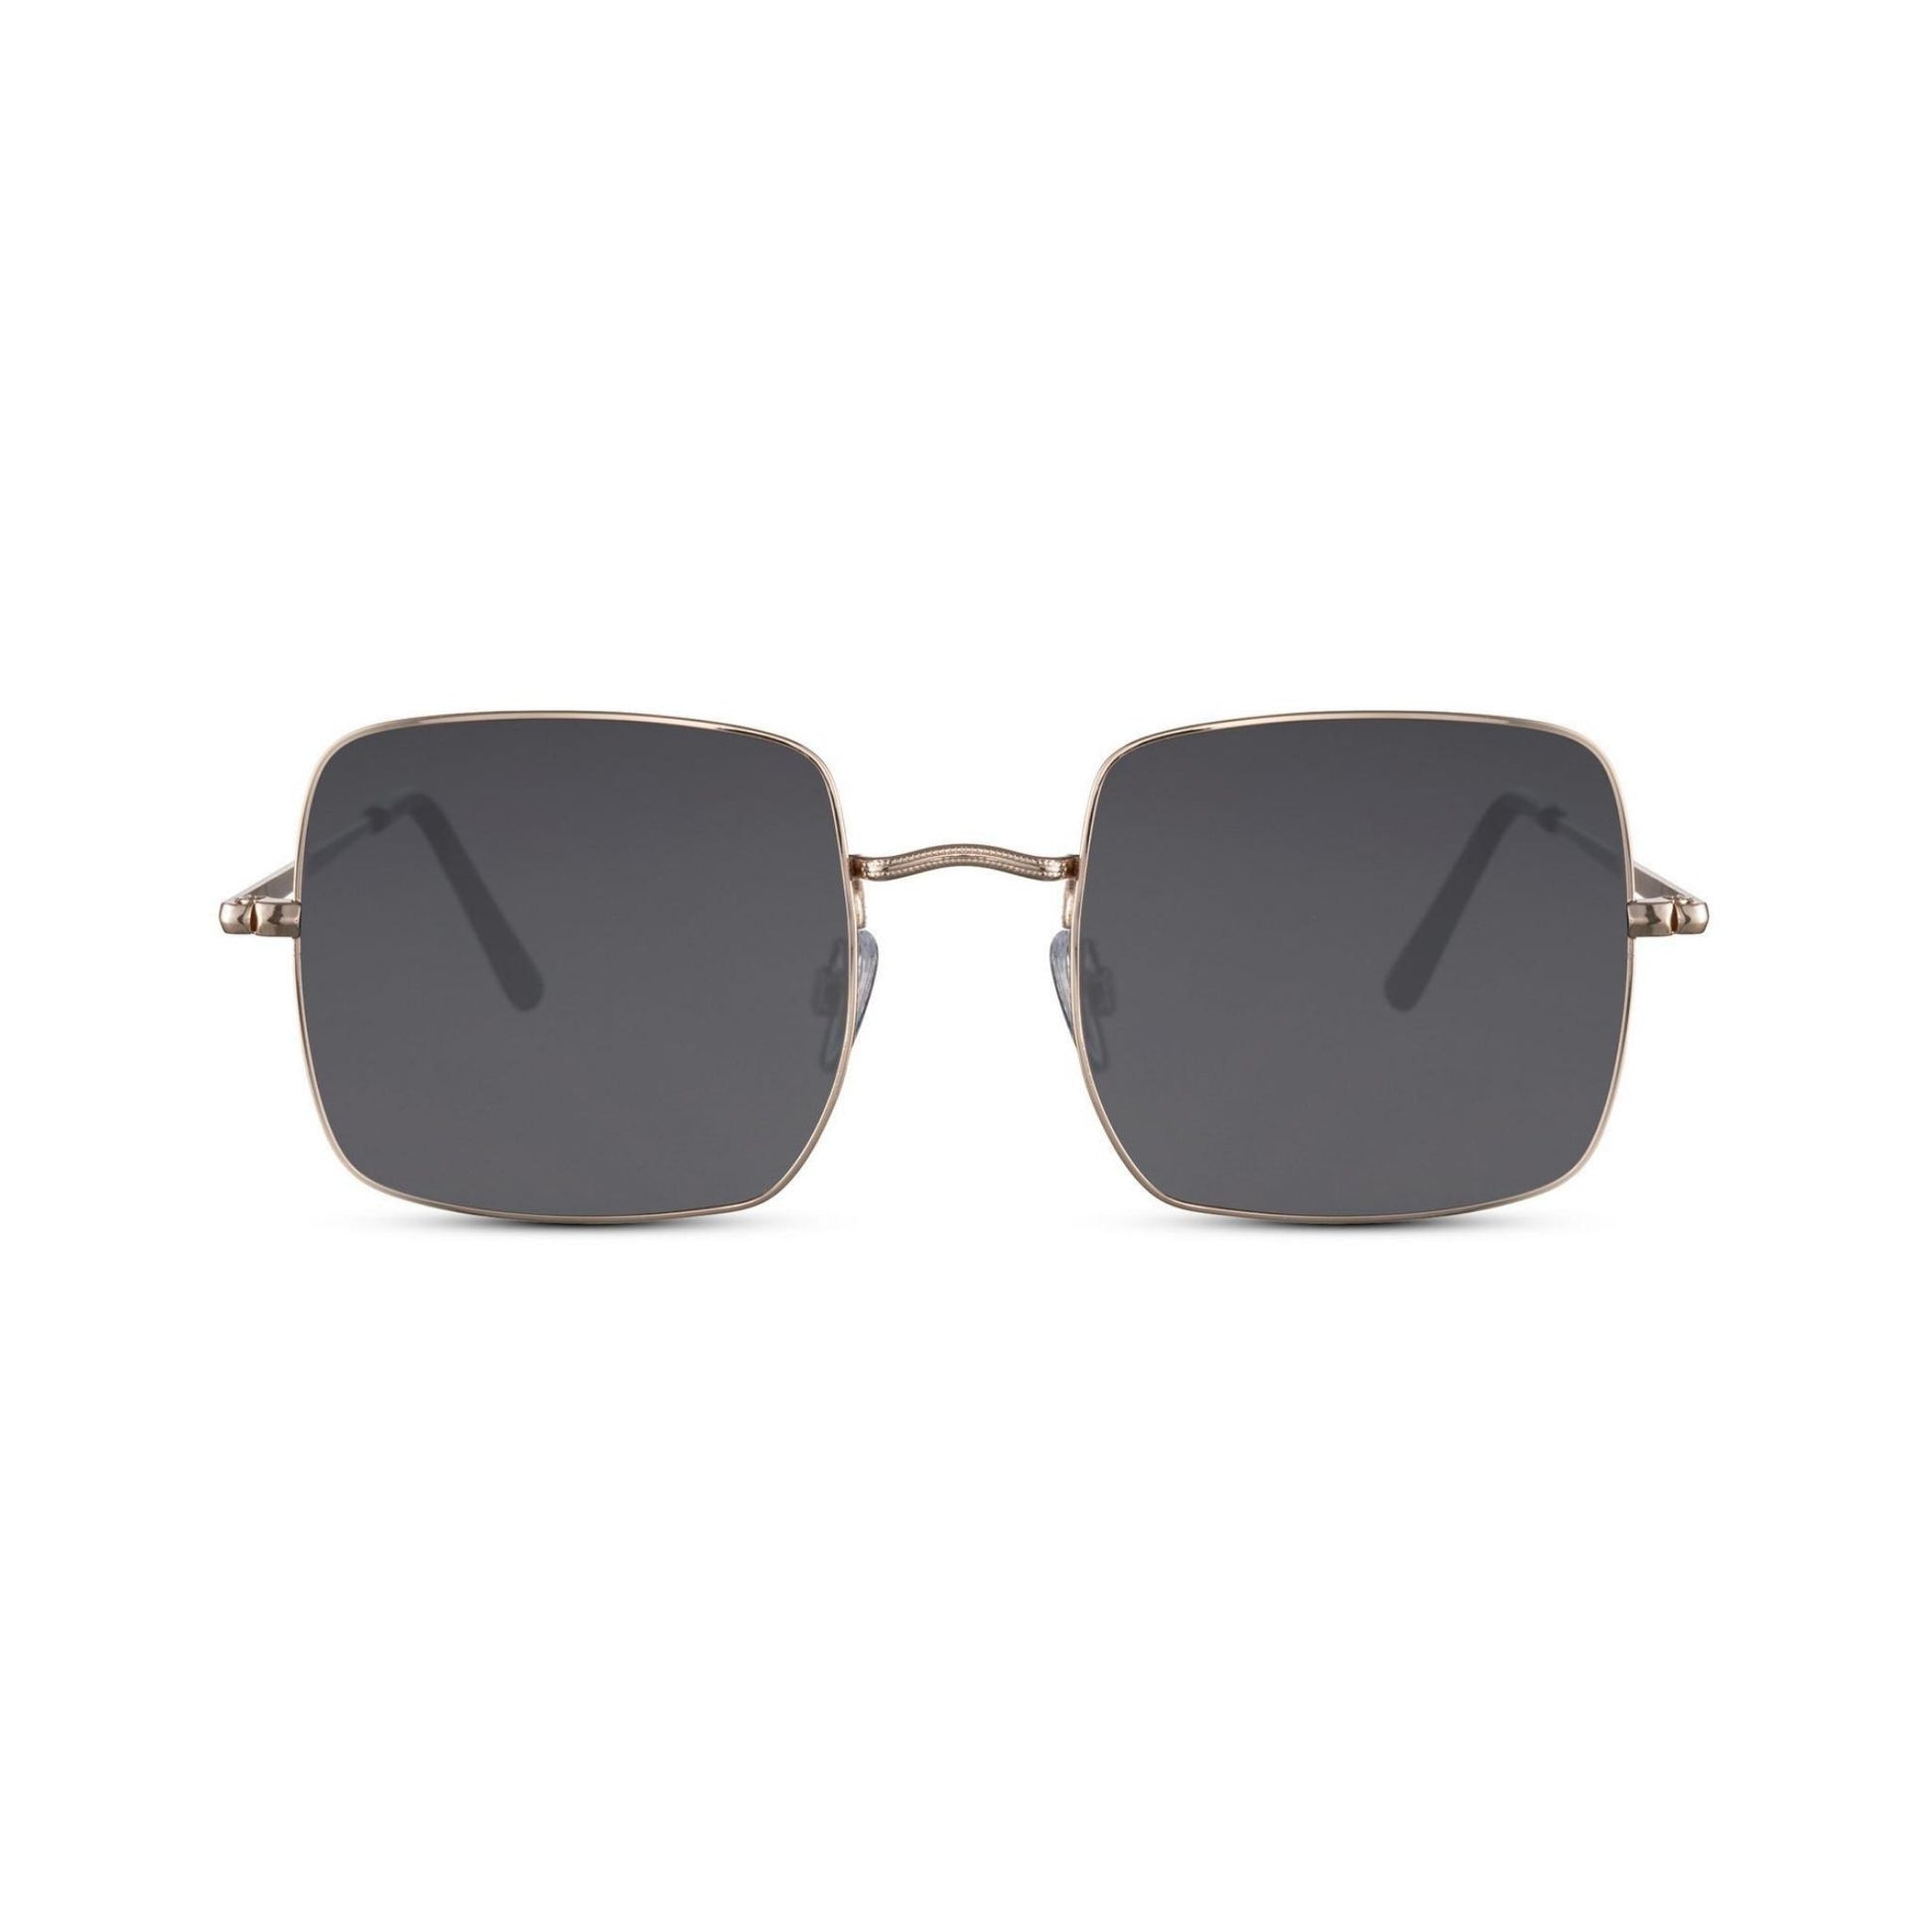 Τετράγωνα Γυαλιά ηλίου Muse της Exposure Sunglasses με προστασία UV400 με χρυσό σκελετό και μαύρο φακό.